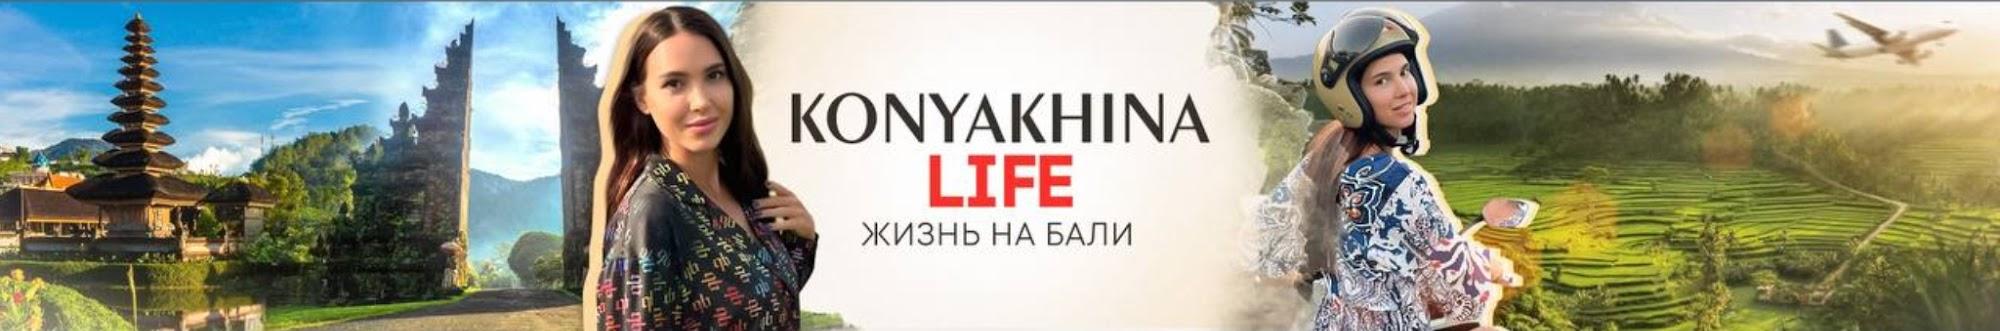 Konyakhina LIFE